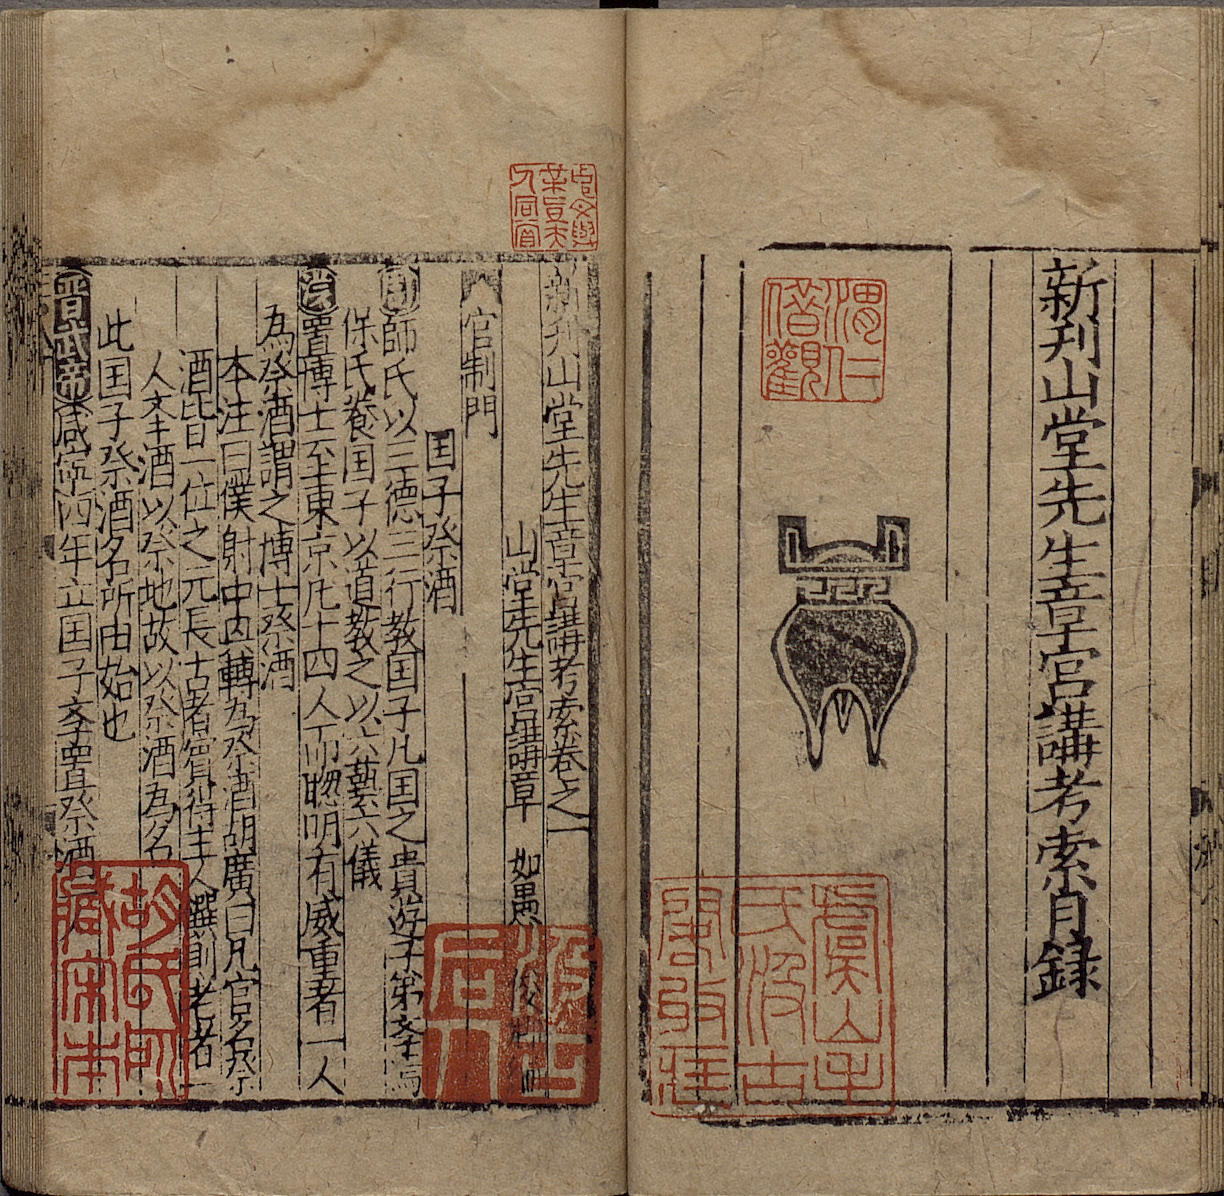 Investigative Guide to the Numerous Books from the Shantang Studio (Xinkan Shantang Xiansheng Zhang Gongjiang Kaosuo)